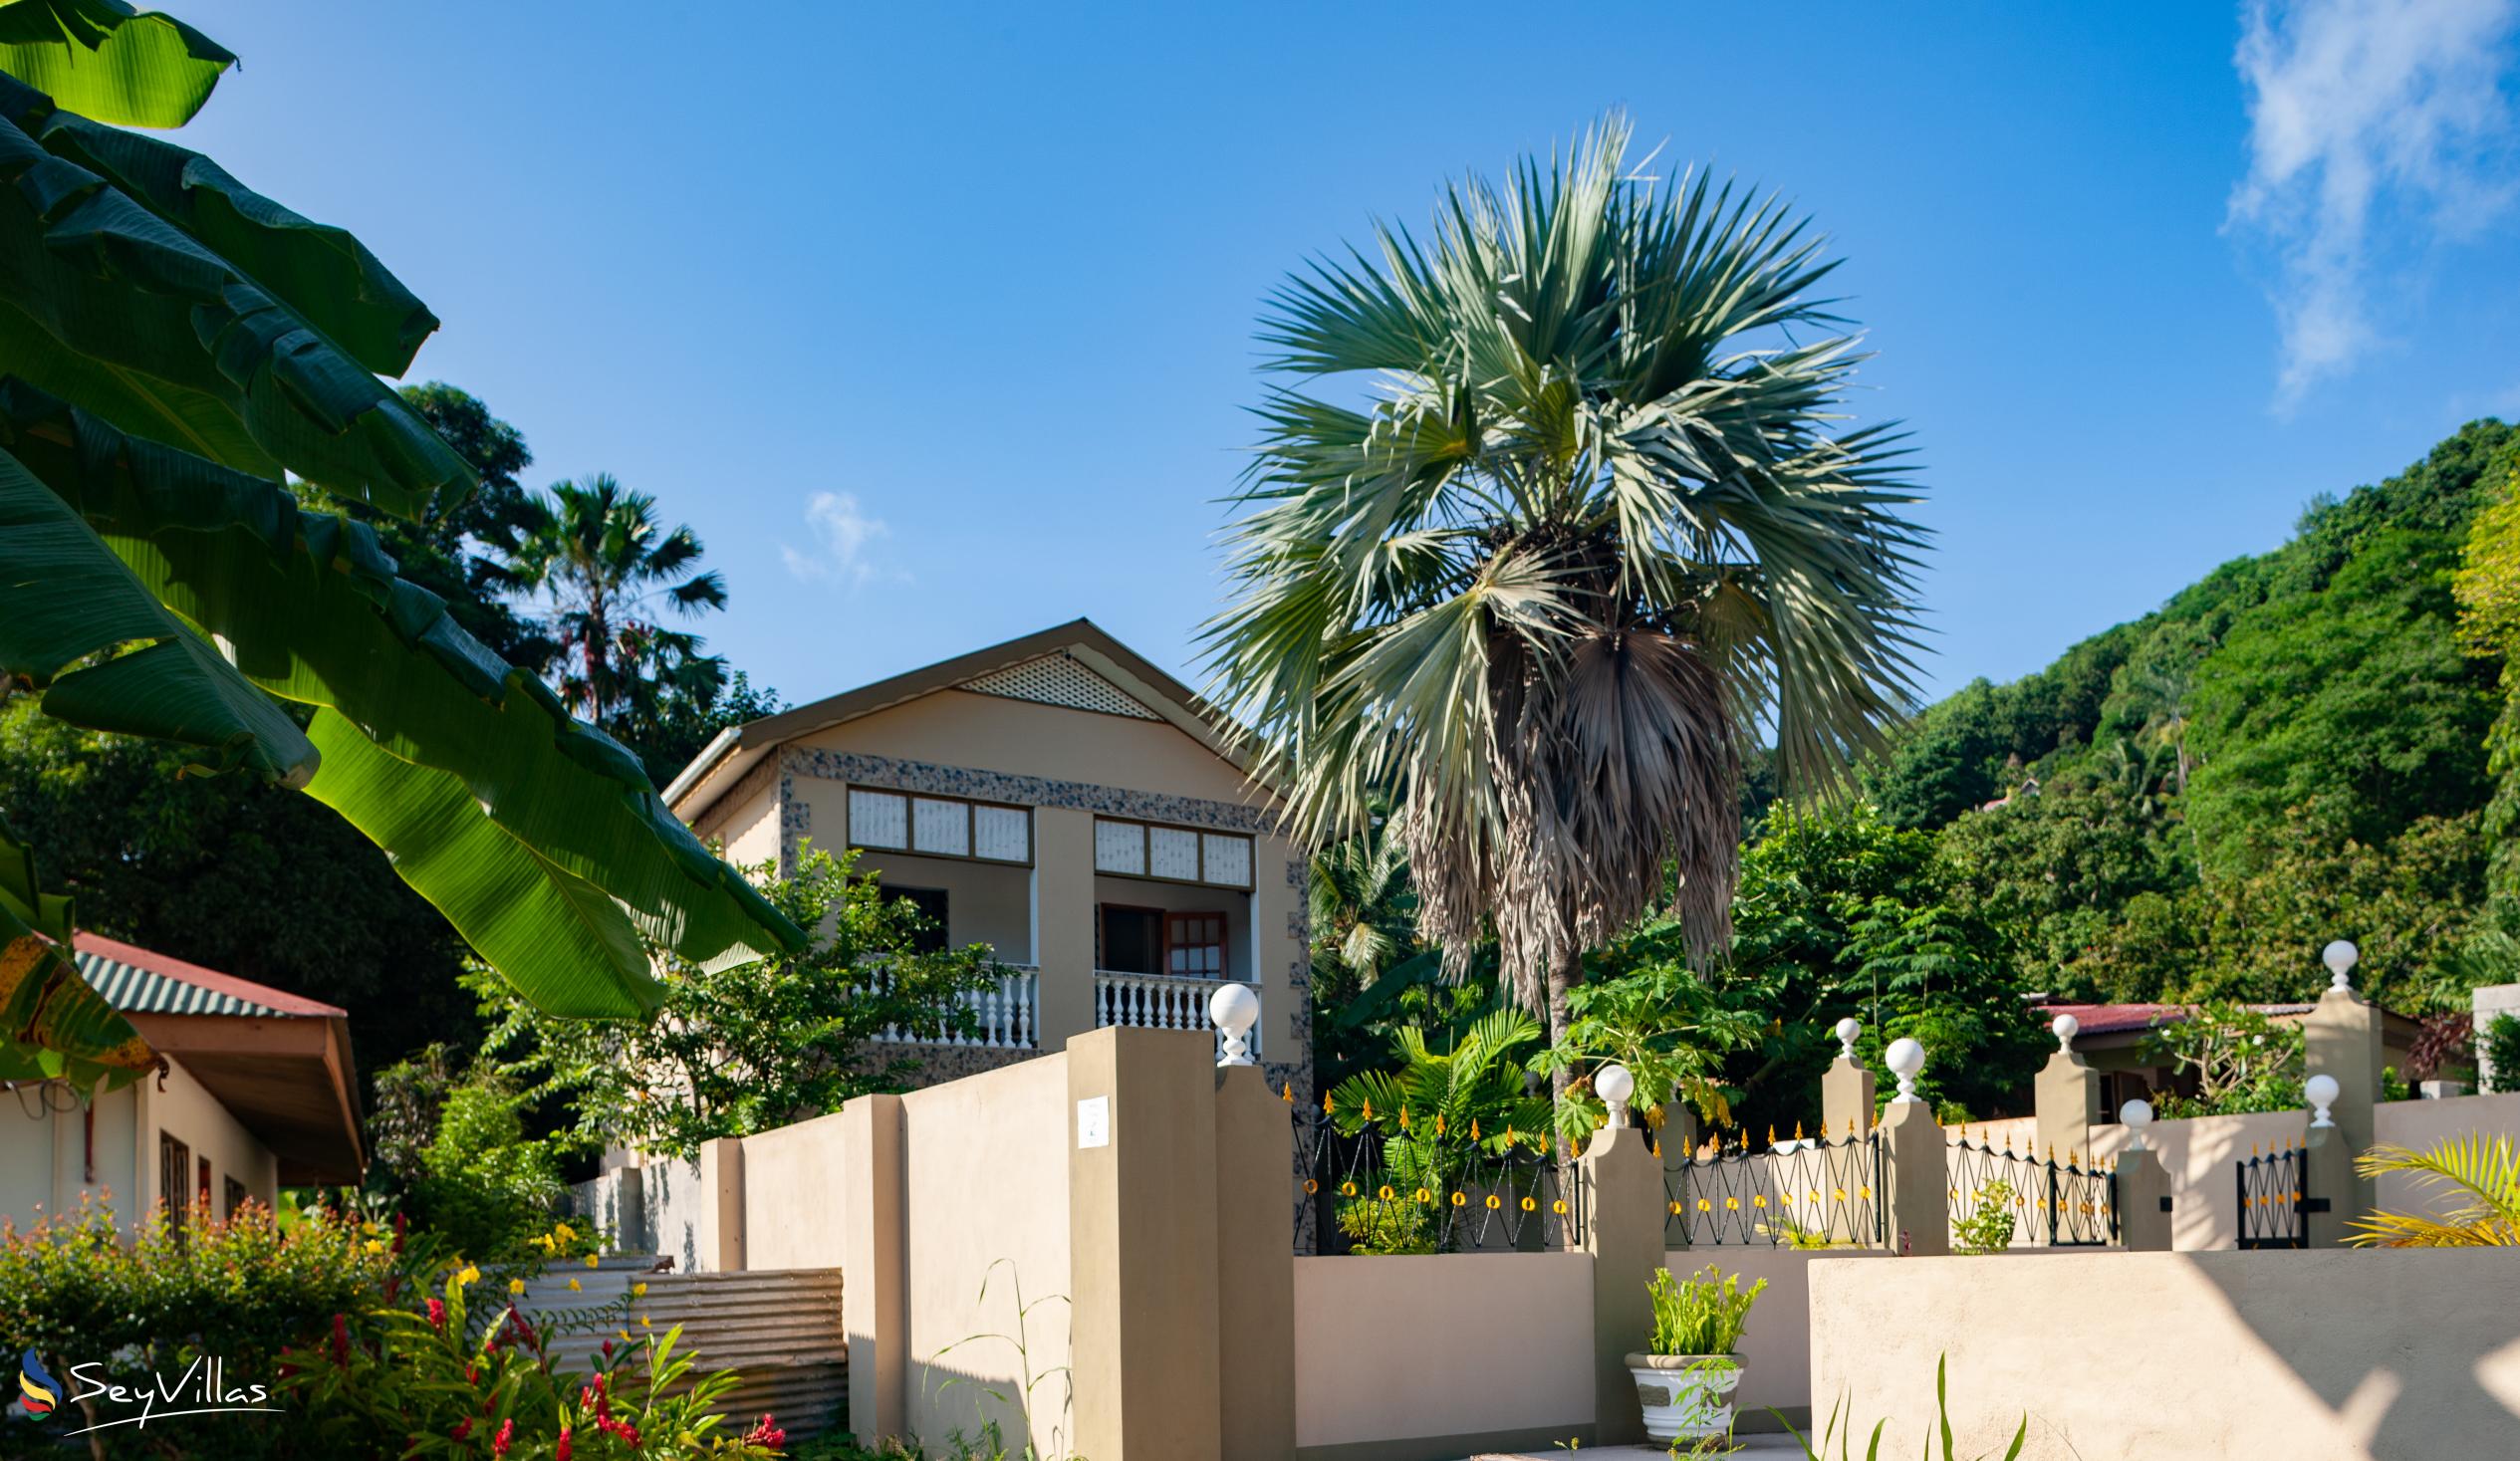 Foto 6: La Residence d'Almee - Aussenbereich - Praslin (Seychellen)